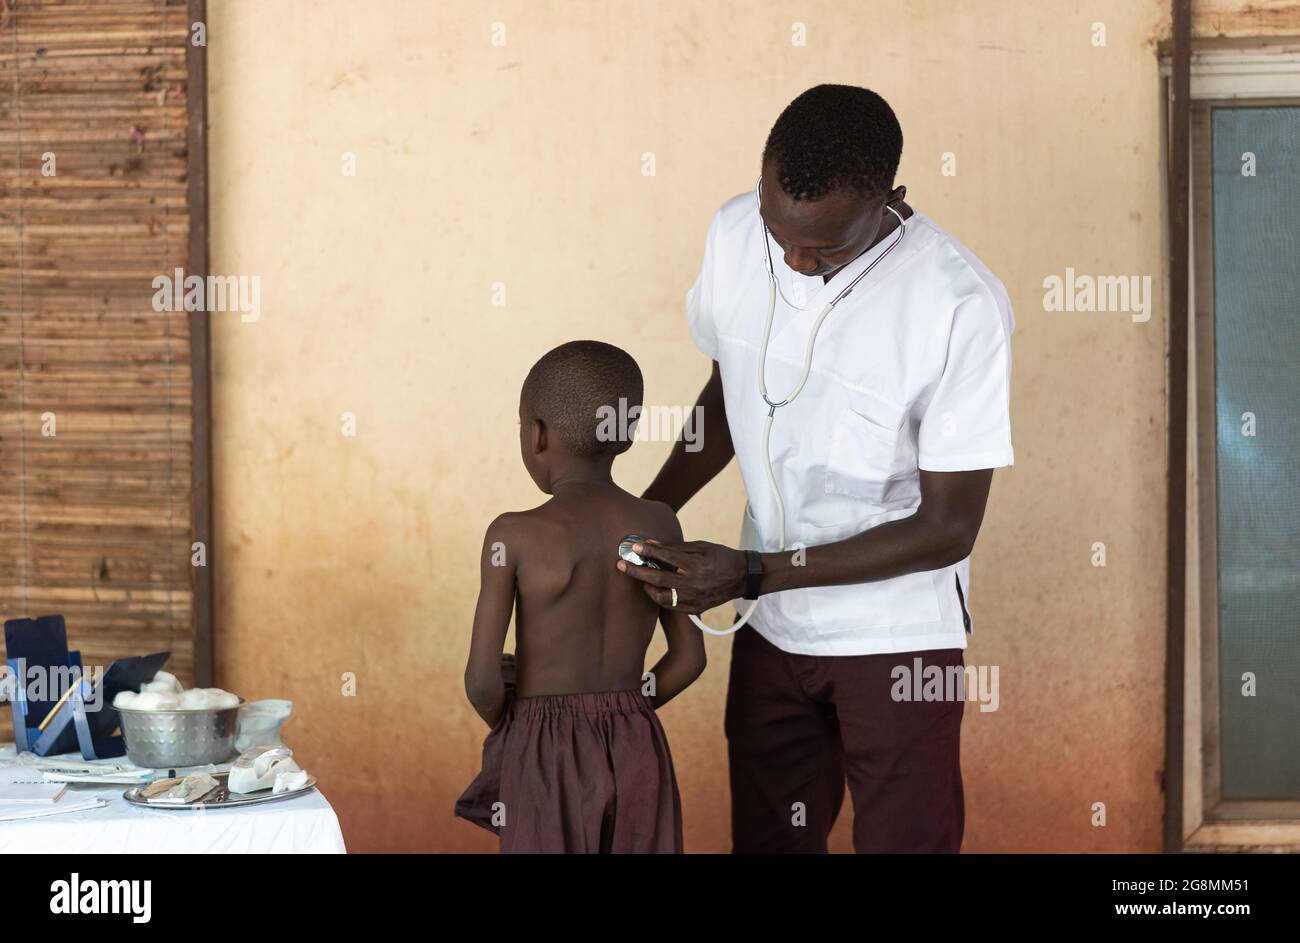 Une infirmière africaine porte un manteau de laboratoire à l'hôpital rural et inspecte et examine la santé d'un petit patient africain. Banque D'Images